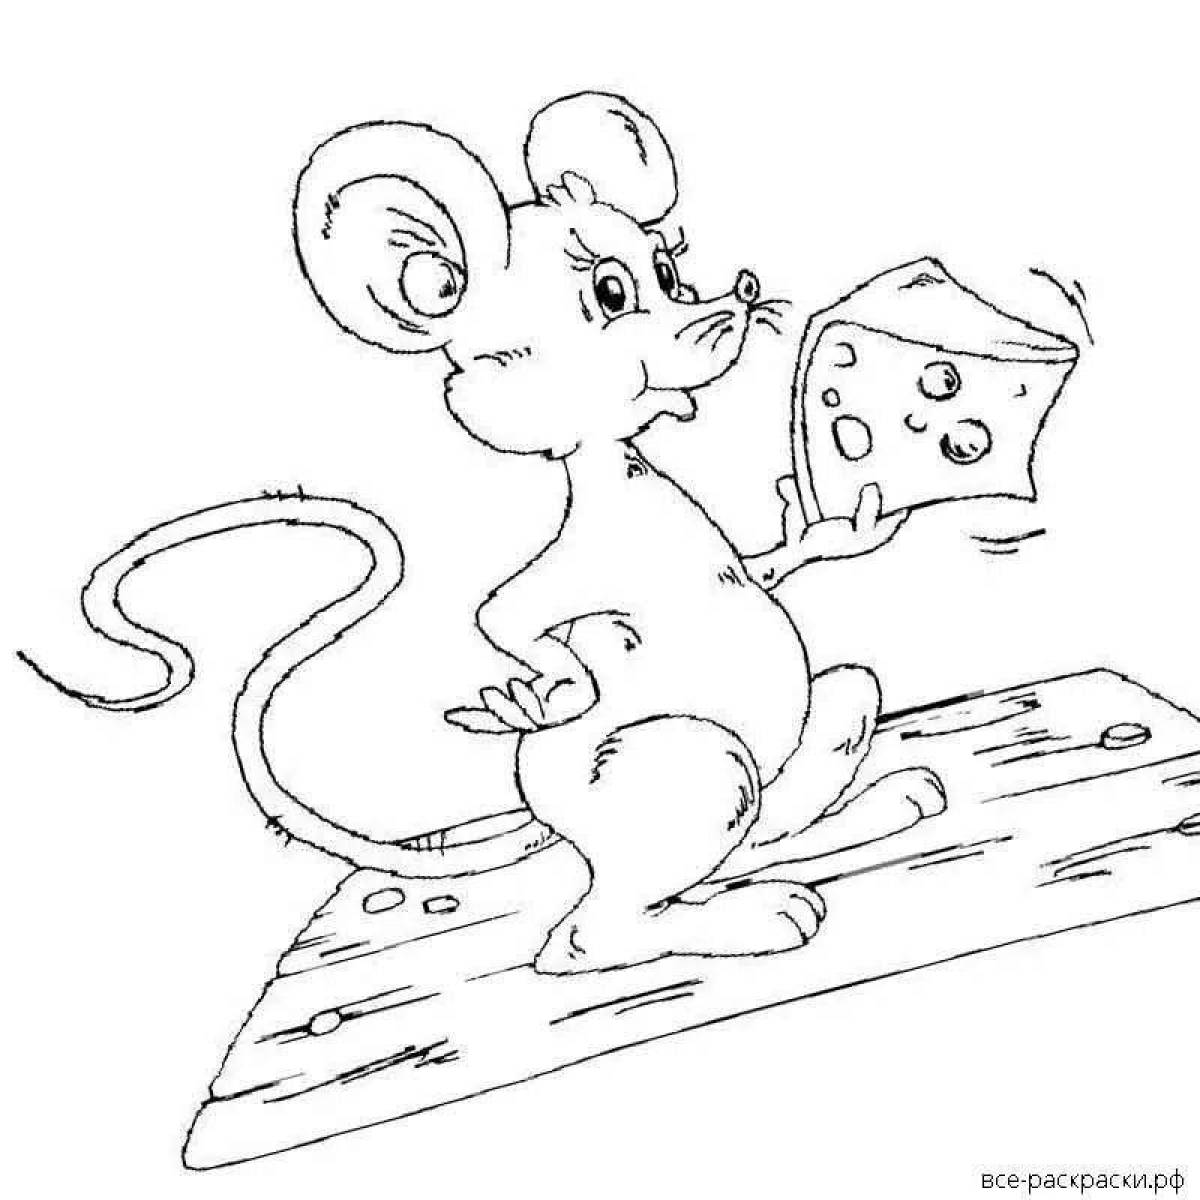 Глупая раскраска. Сказка о глупом мышонке раскраска для детей. Мышка в сказке о глупом мышонке раскраска. Мышка раскраска для детей. Мышонок раскраска для детей.